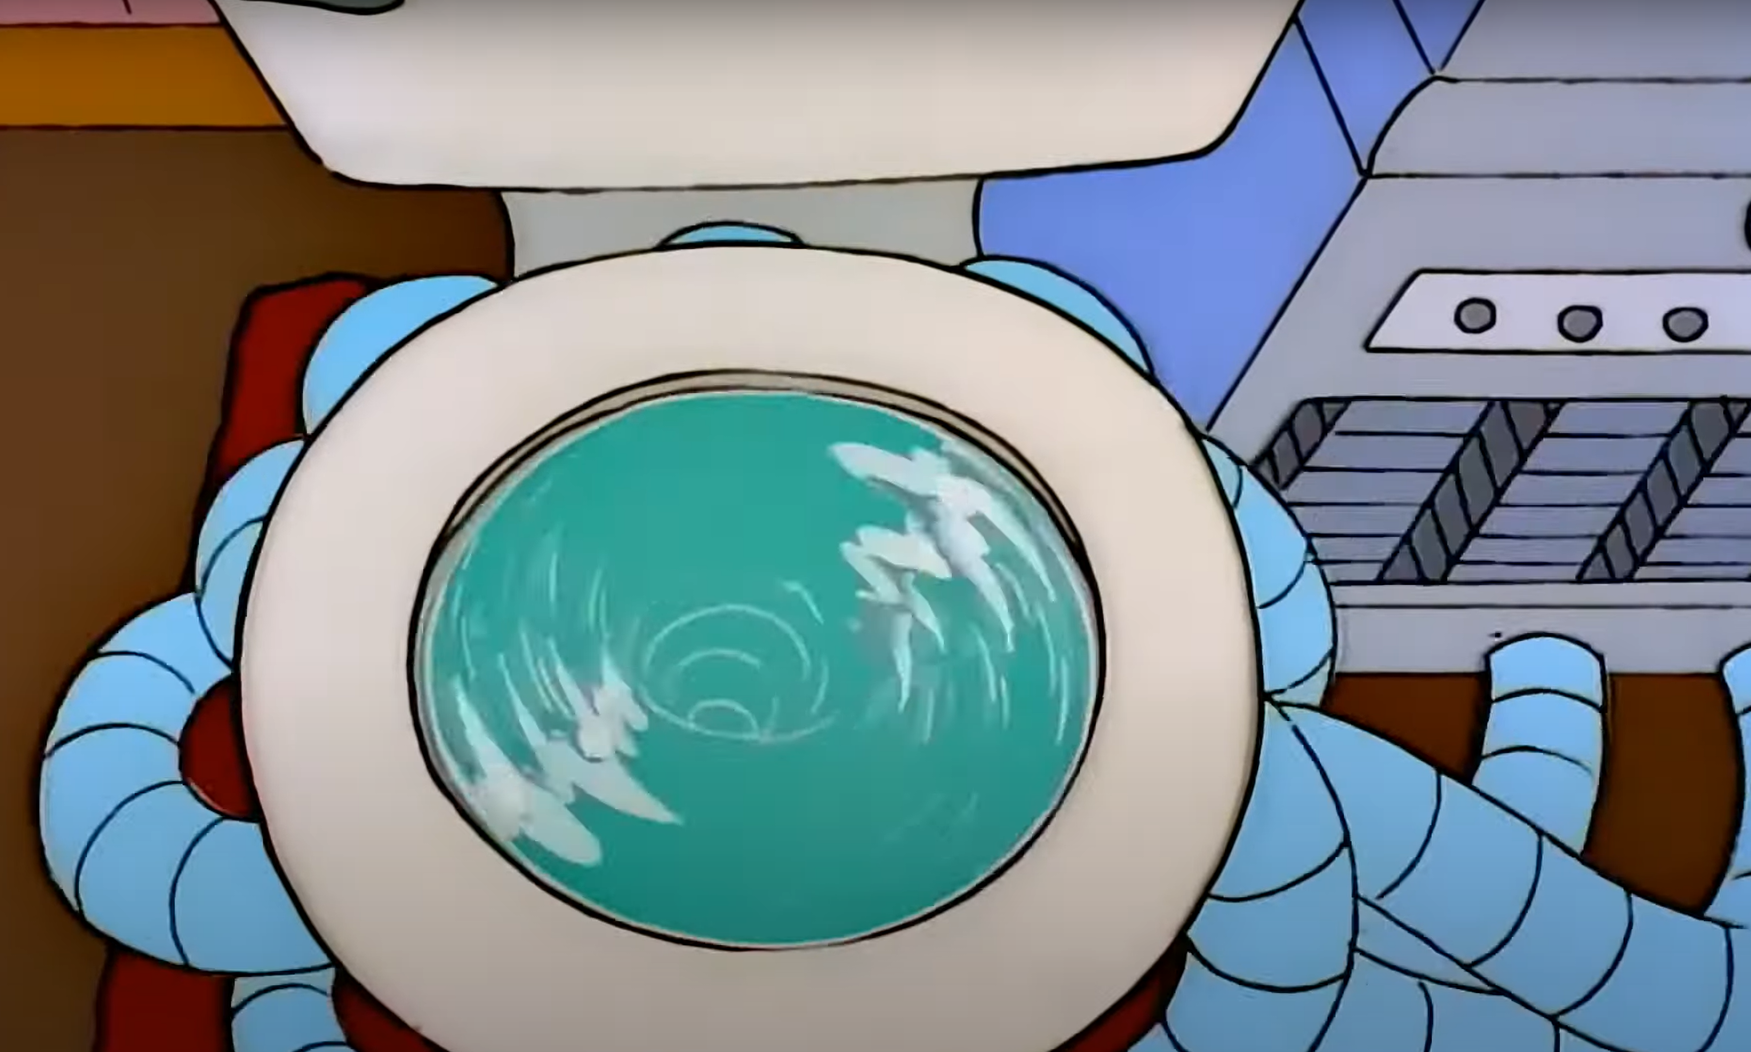 Simpsons Embassy Toilet Blank Meme Template